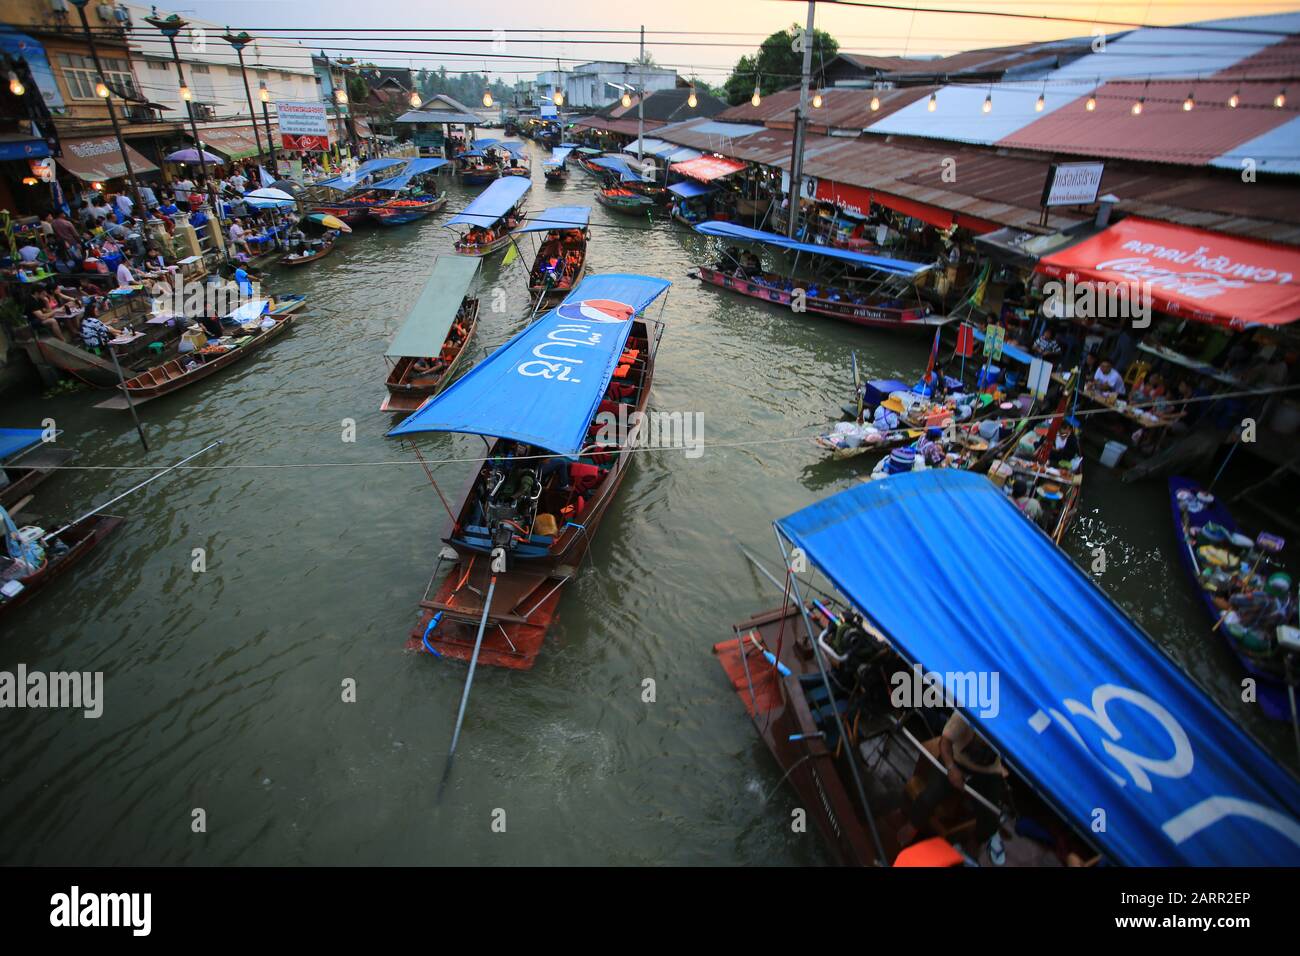 Bangkok/Thailand, 29. Dezember 2019 - Thailänder verkaufen Lebensmittel an Touristen auf dem schwimmenden Markt Amphawa, die Tourismusbranche ist die wichtigste Wirtschaftsbranche i. Stockfoto